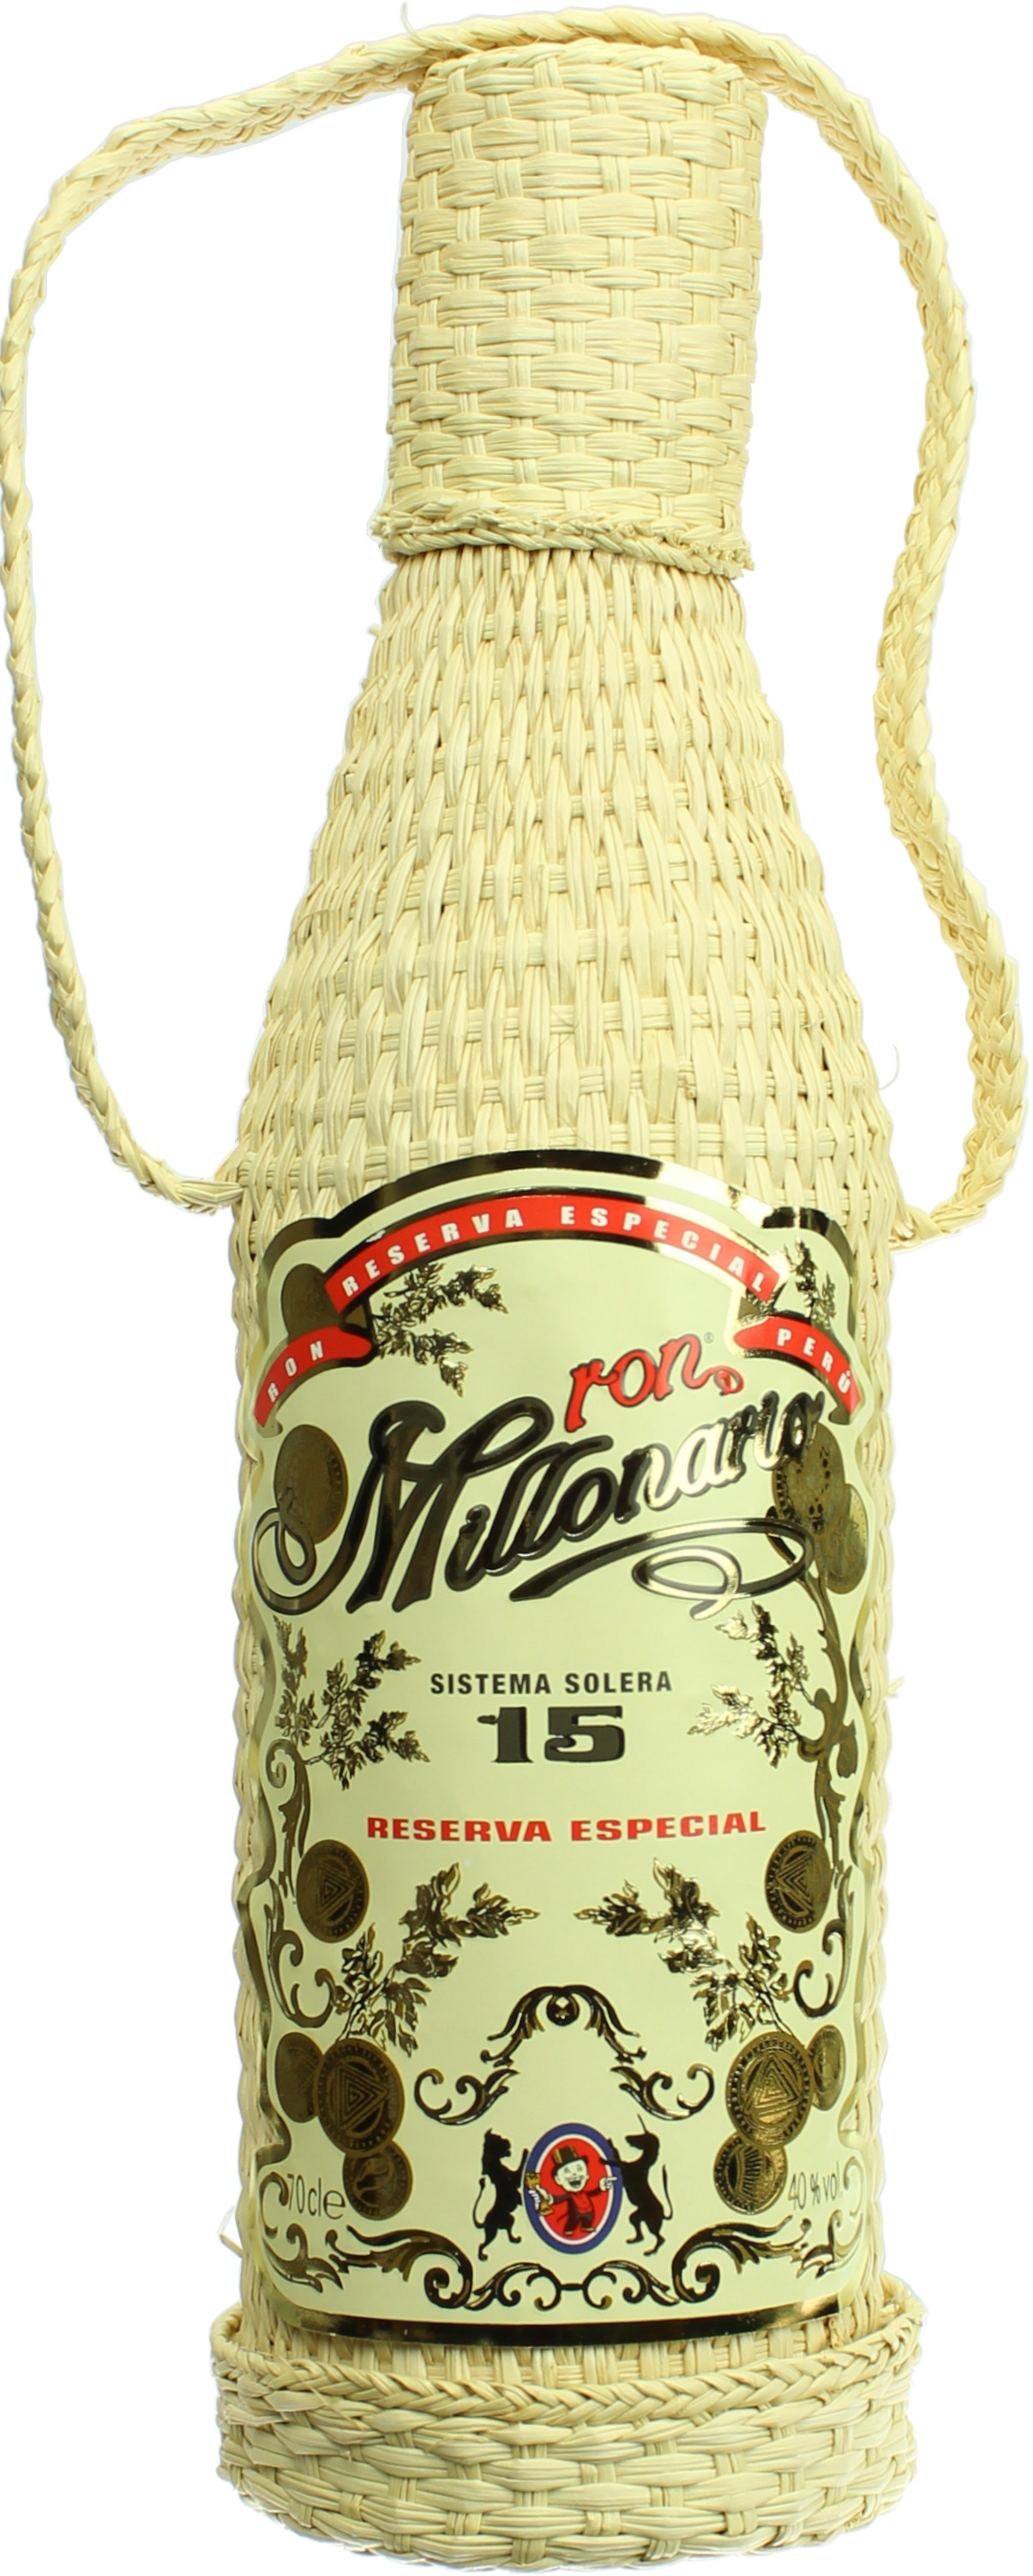 Ron Millonario Solera 15 Reserva Especial Rum 40.0% 0,7l